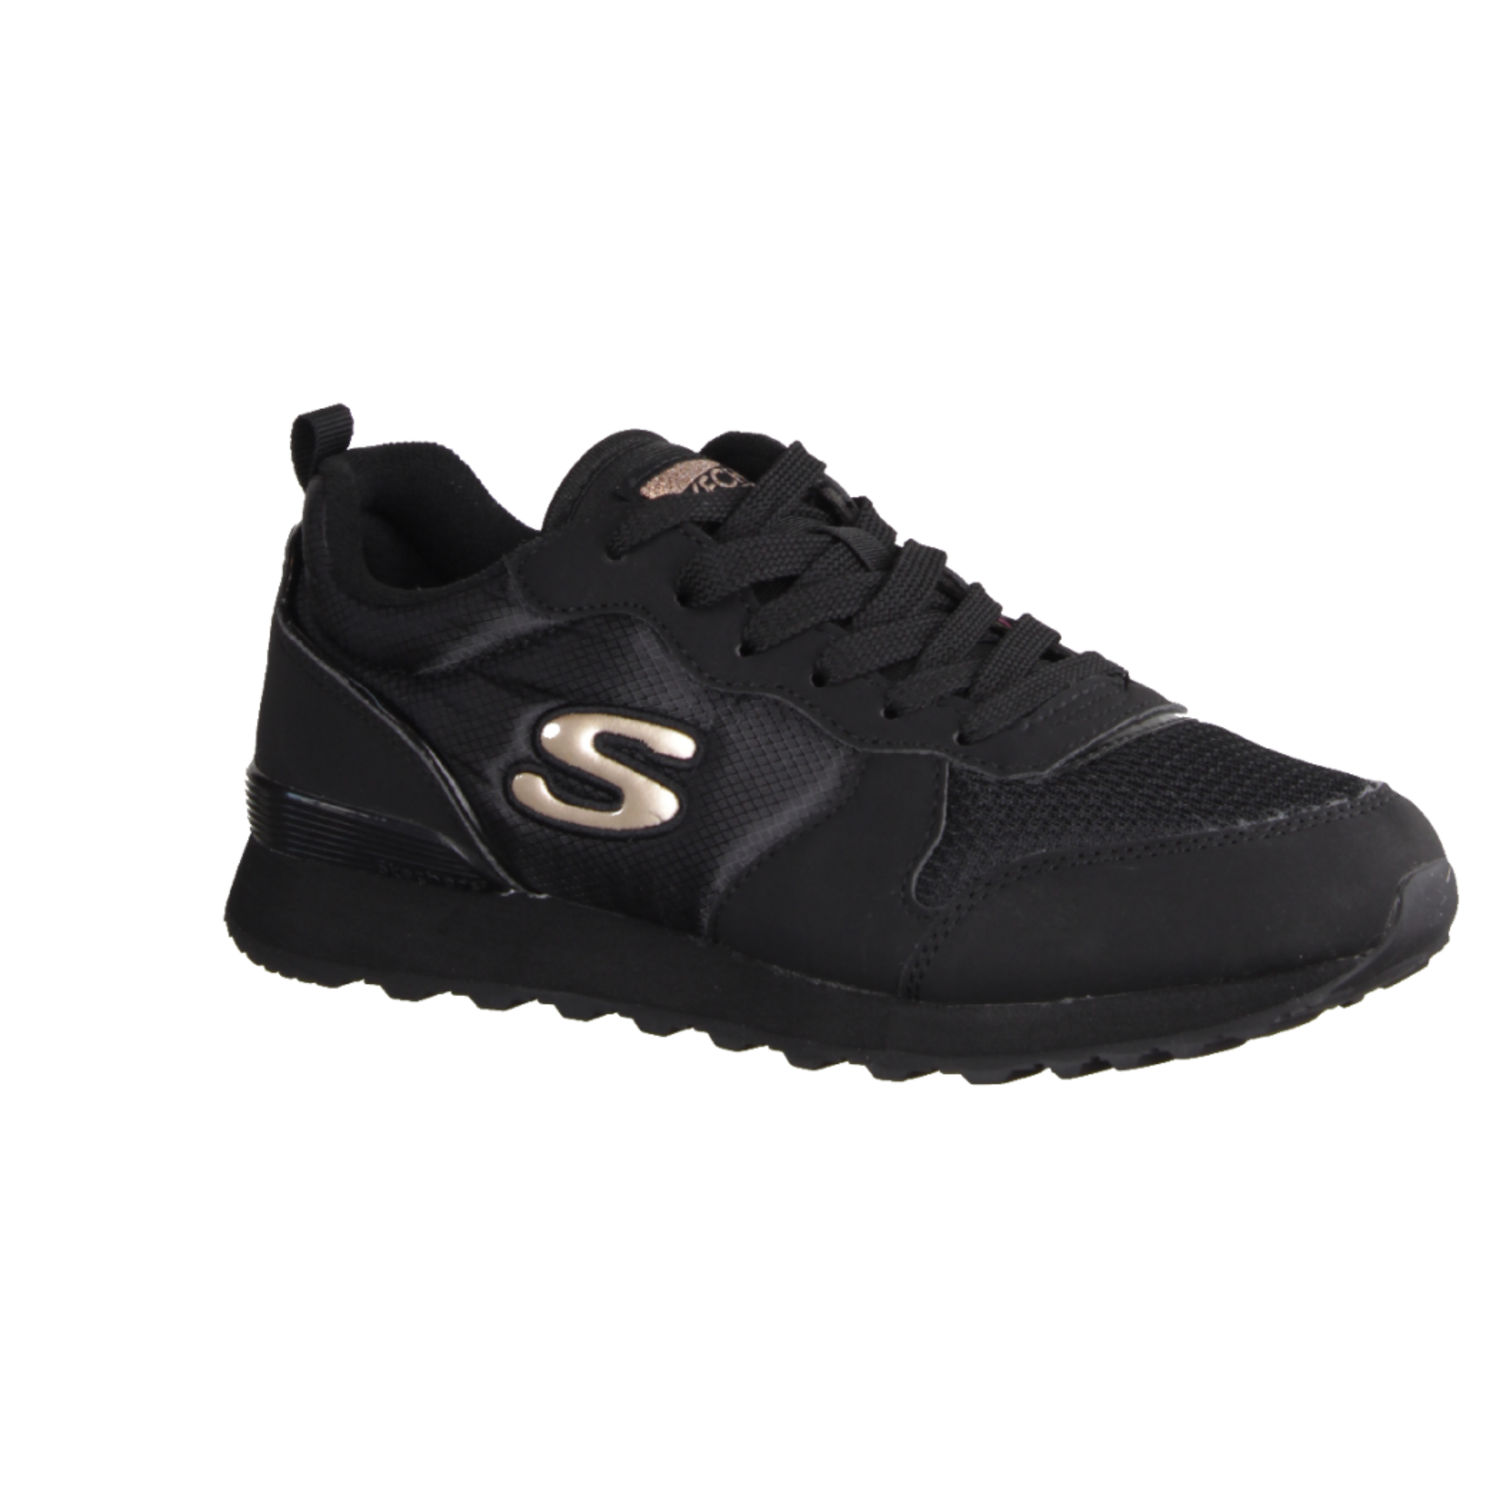 Skechers OG 85 177004BBK Damen, Sneaker, Synthetik/Textil, Black, NEU -